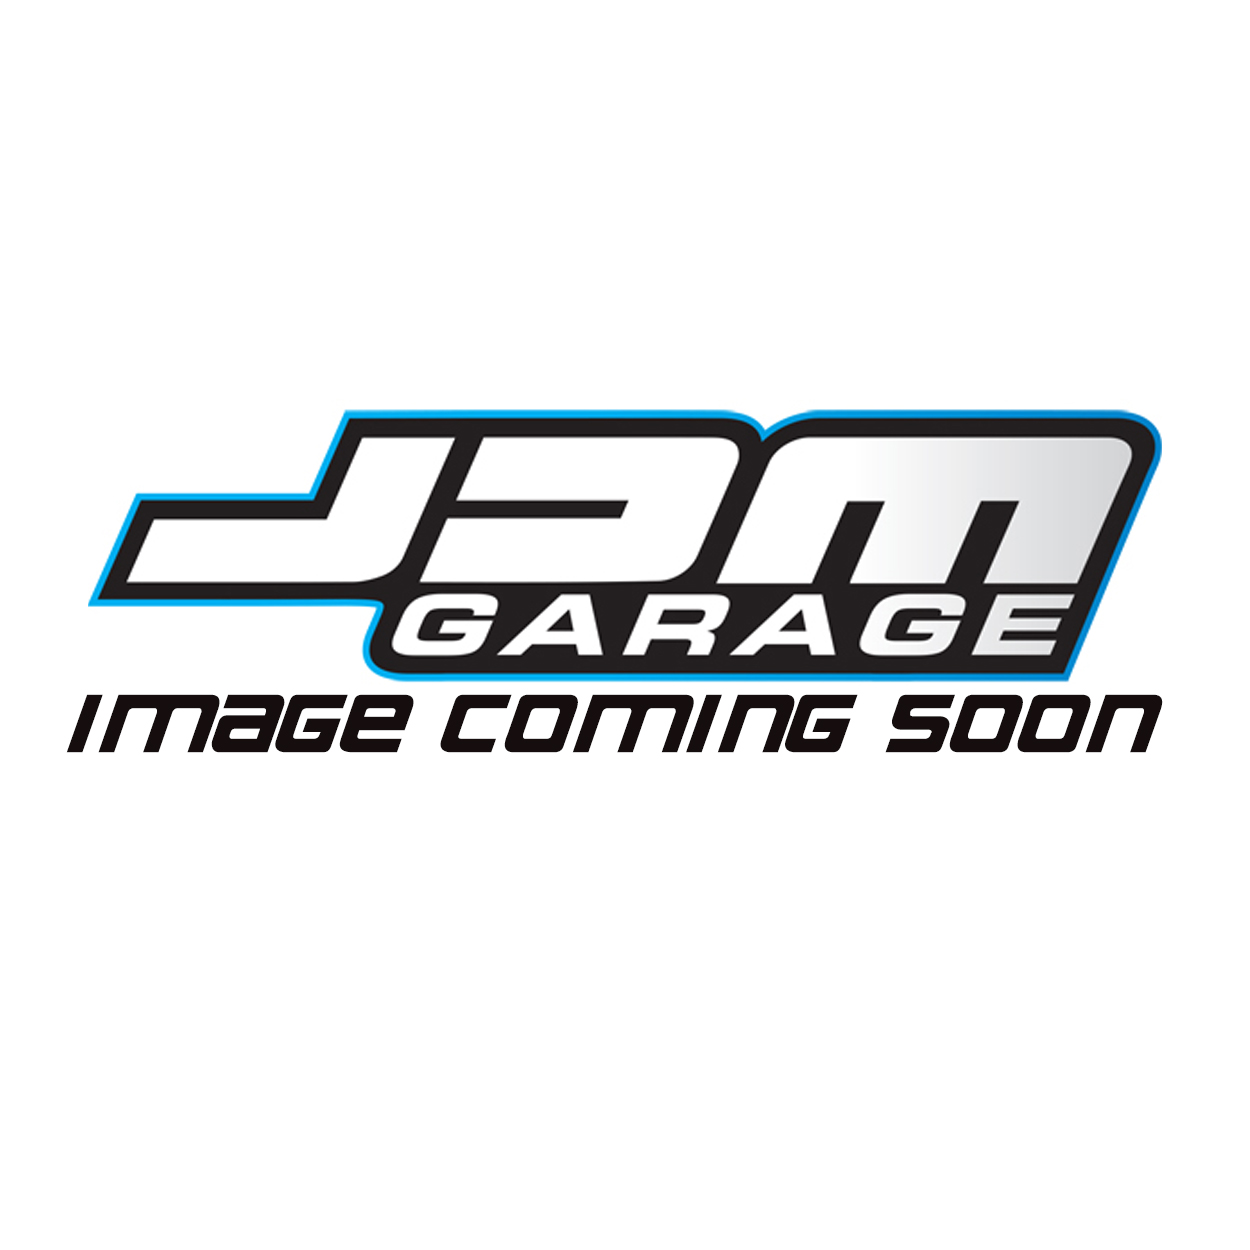 Nissan Genuine OEM Engine Gasket Kit For Silvia S14 200SX / S15 SR20DET 10101-69F28